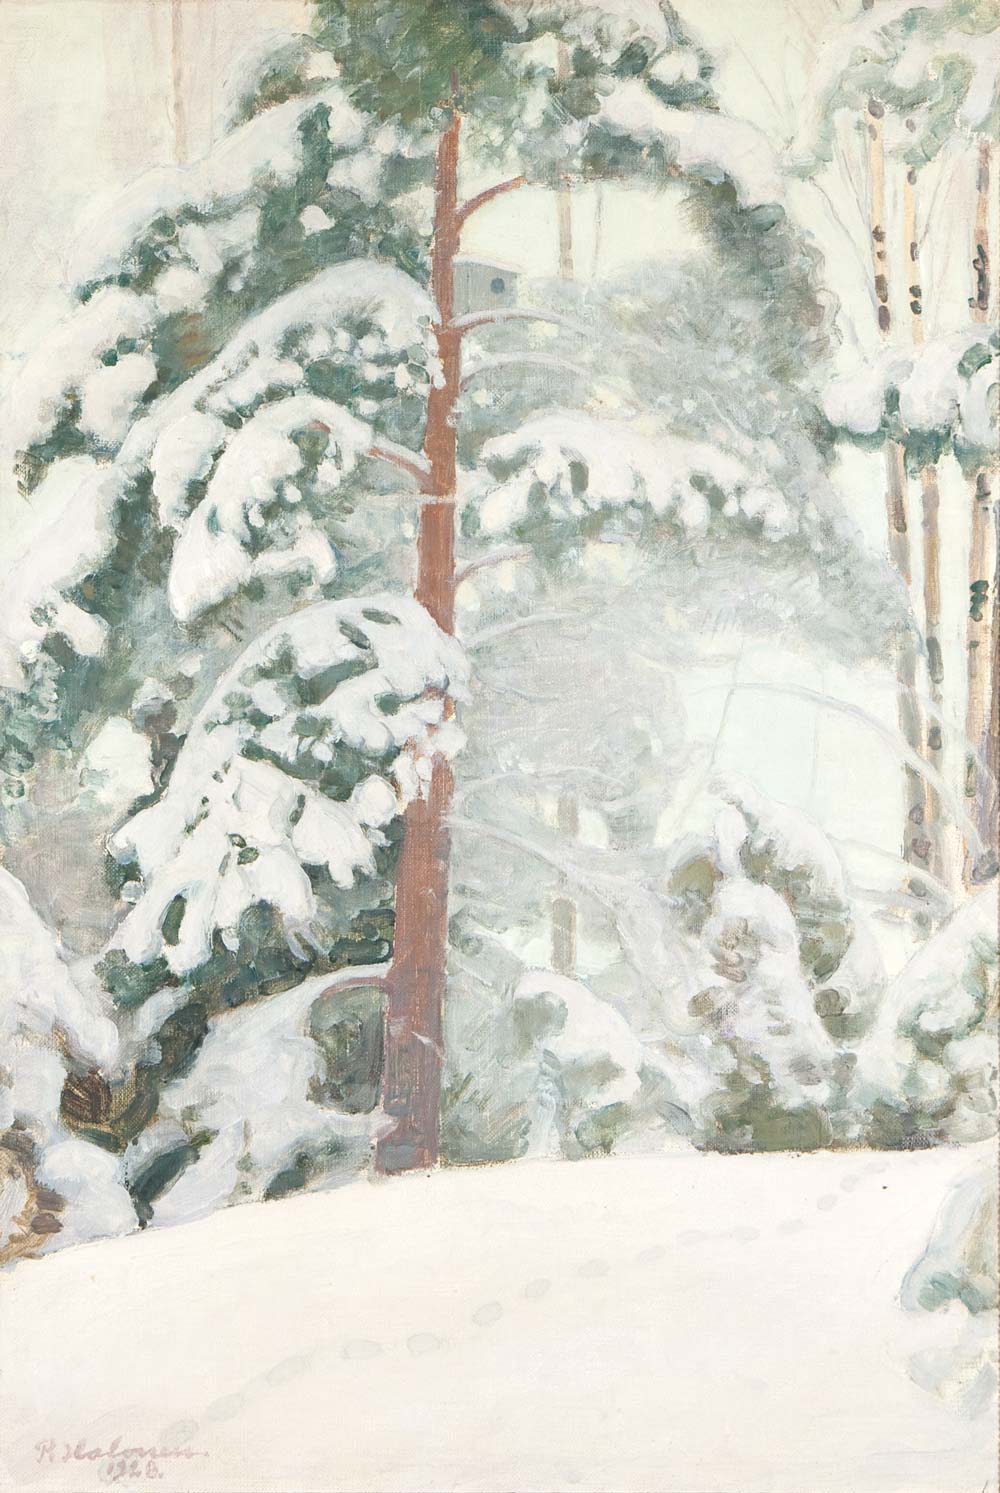 ekka Halonen, Fura i snö, 1928, olja på duk, 74 x 50,5 cm. Foto: Saara Salmi.